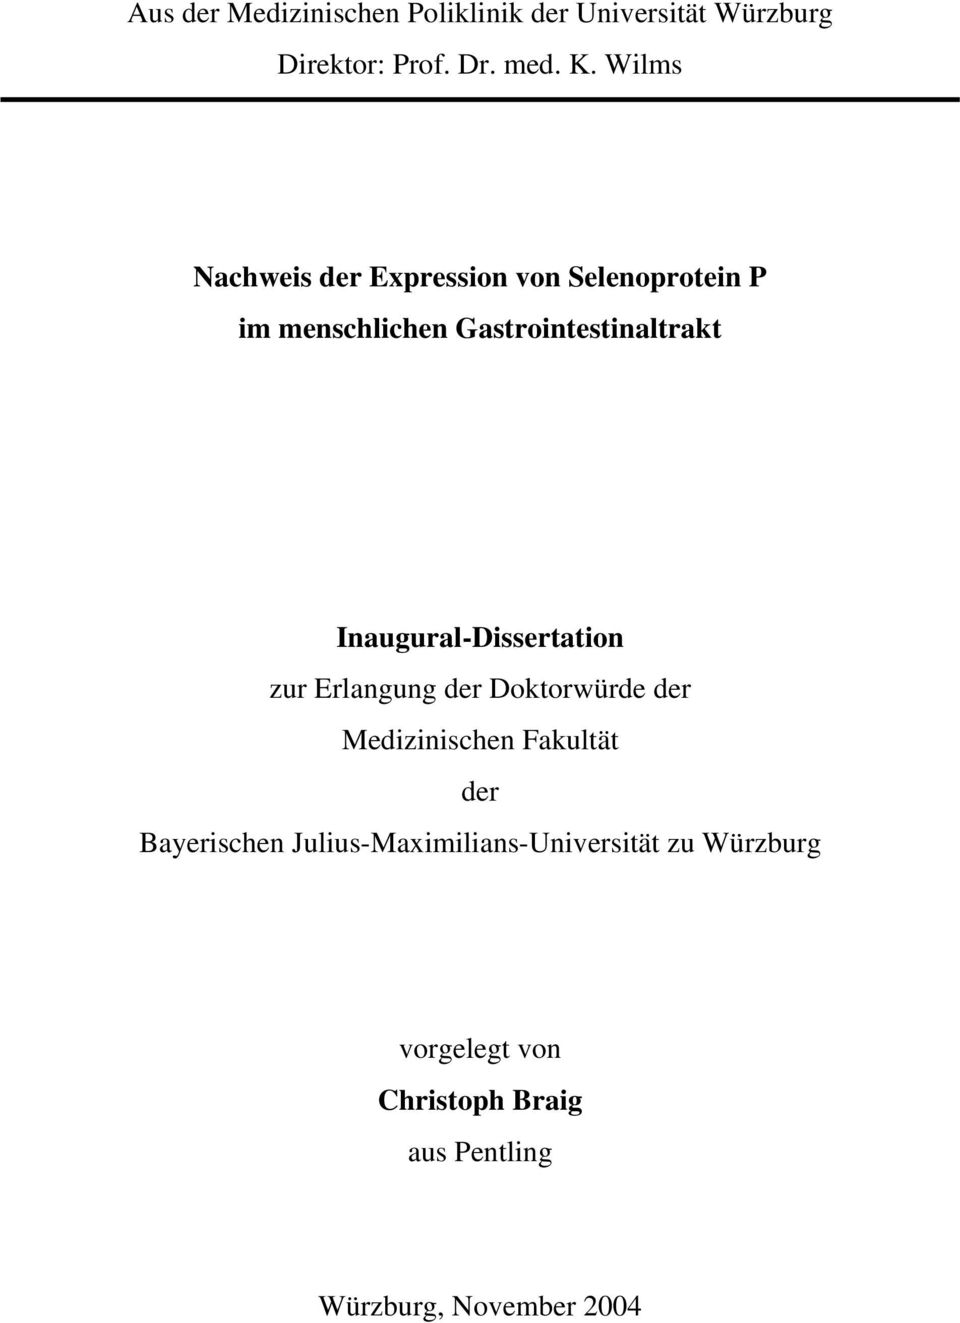 Inaugural-Dissertation zur Erlangung der Doktorwürde der Medizinischen Fakultät der